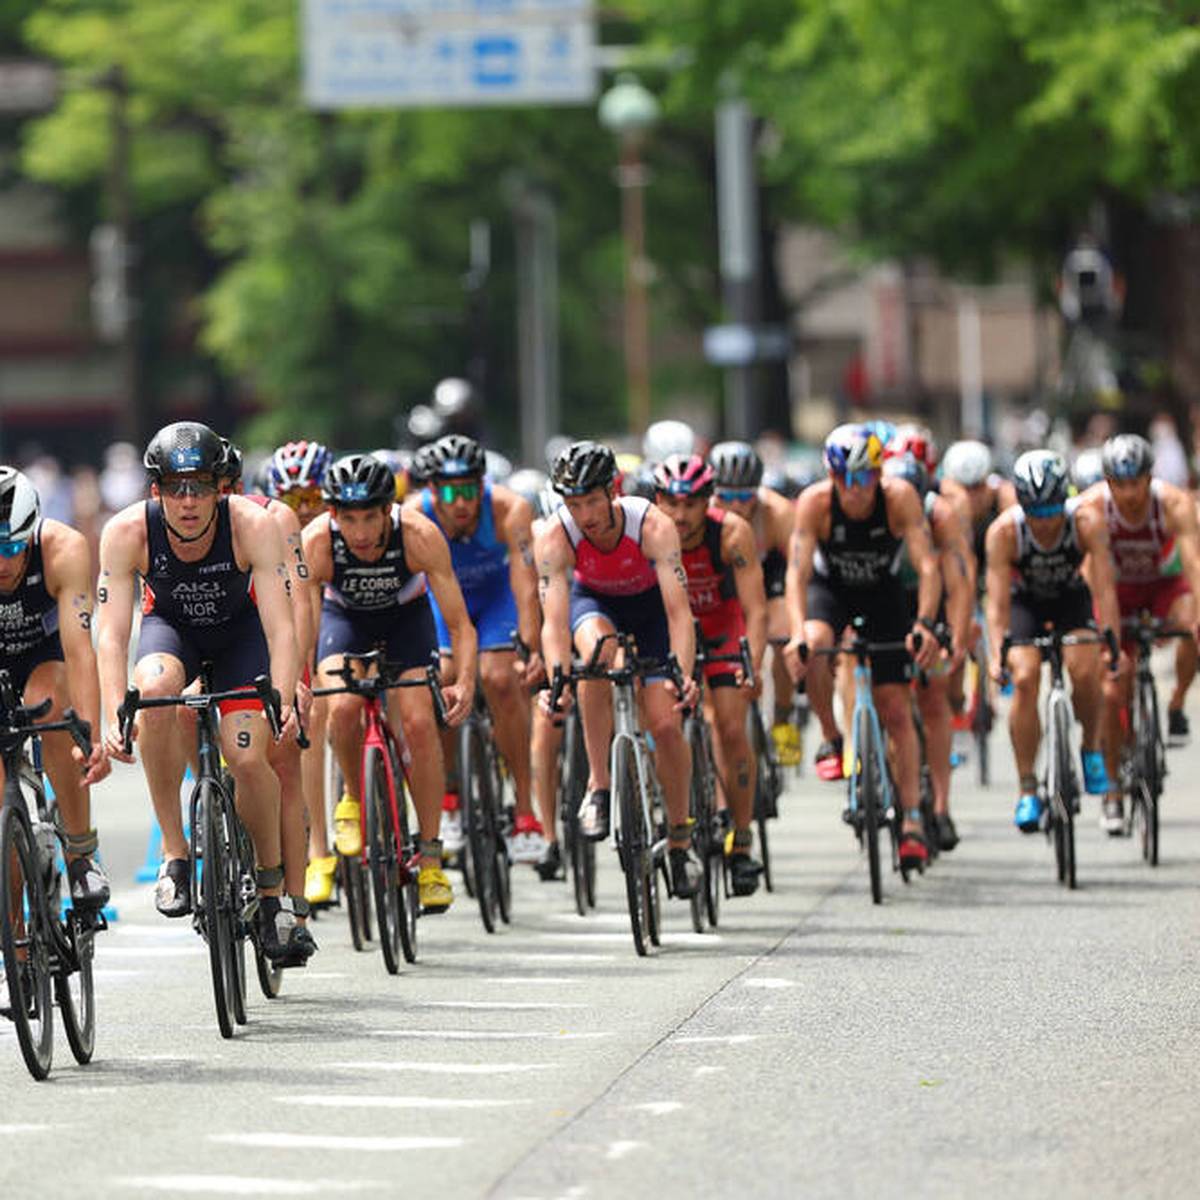 Die Triathlon-Weltmeisterschaften im Sprint und in der Staffel werden im nächsten Jahr vom 13. bis 16. Juli in Hamburg ausgetragen.